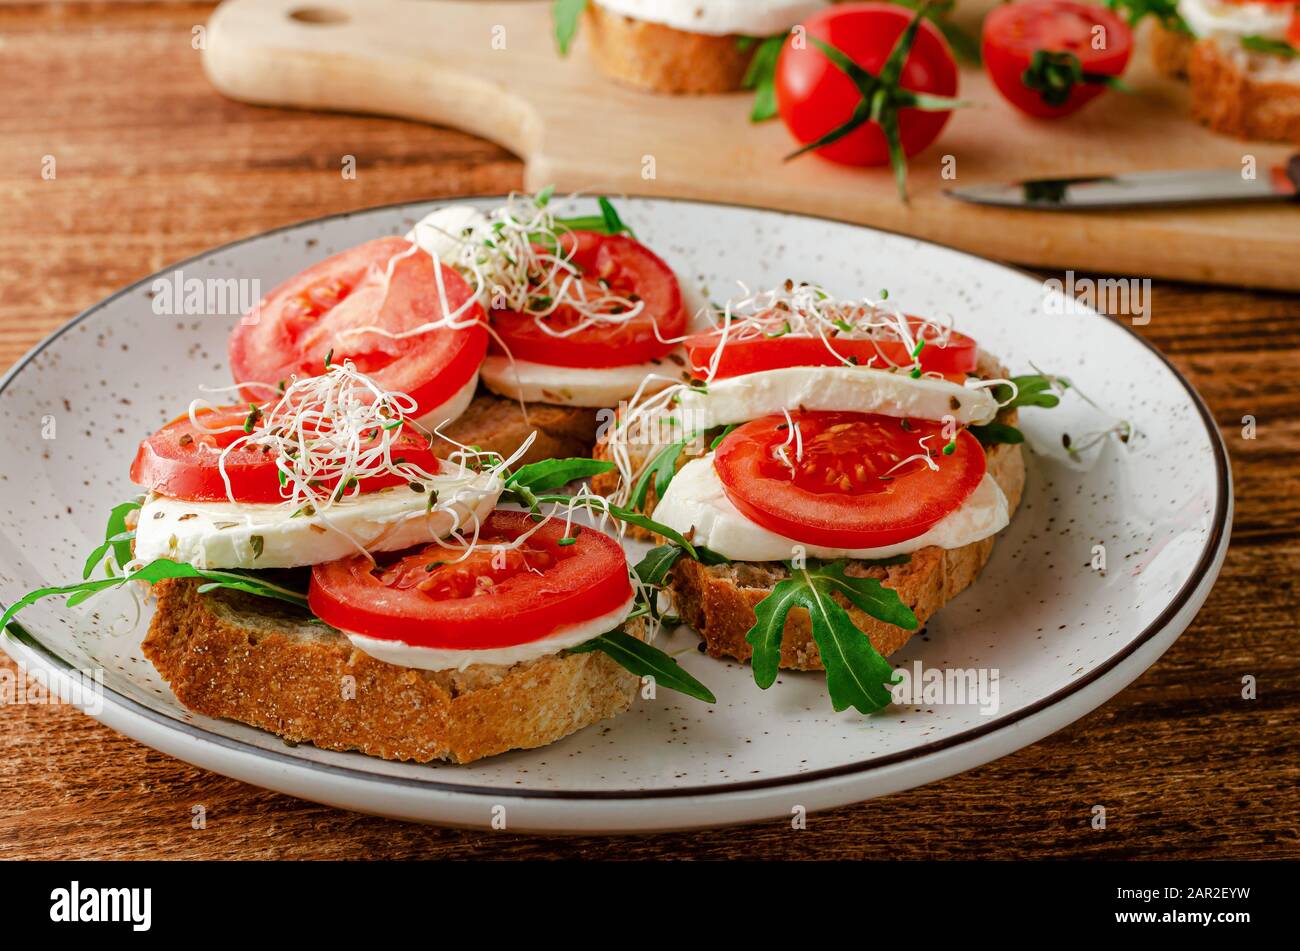 Sandwich aperti con mozzarella fresca, pomodori e rucola. Concetto di cibo italiano Foto Stock